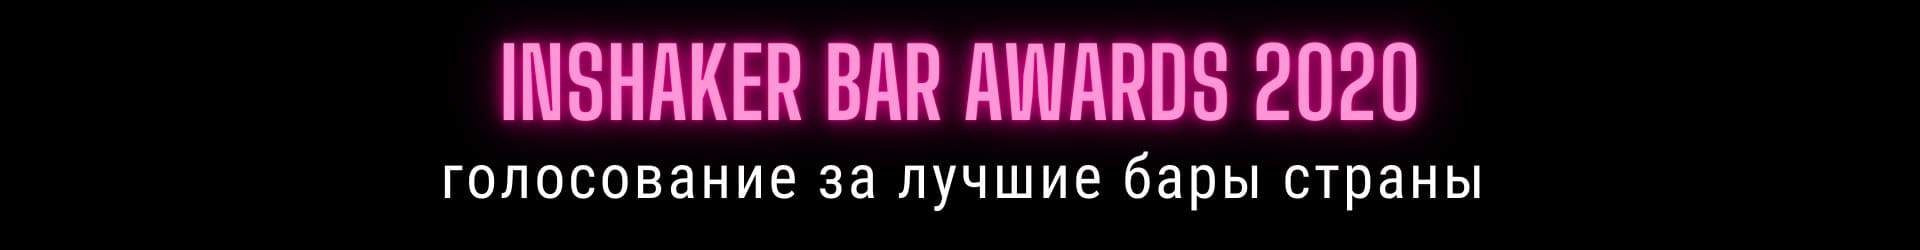 Inshaker Bar Awards 2020: Финал - начало голосования